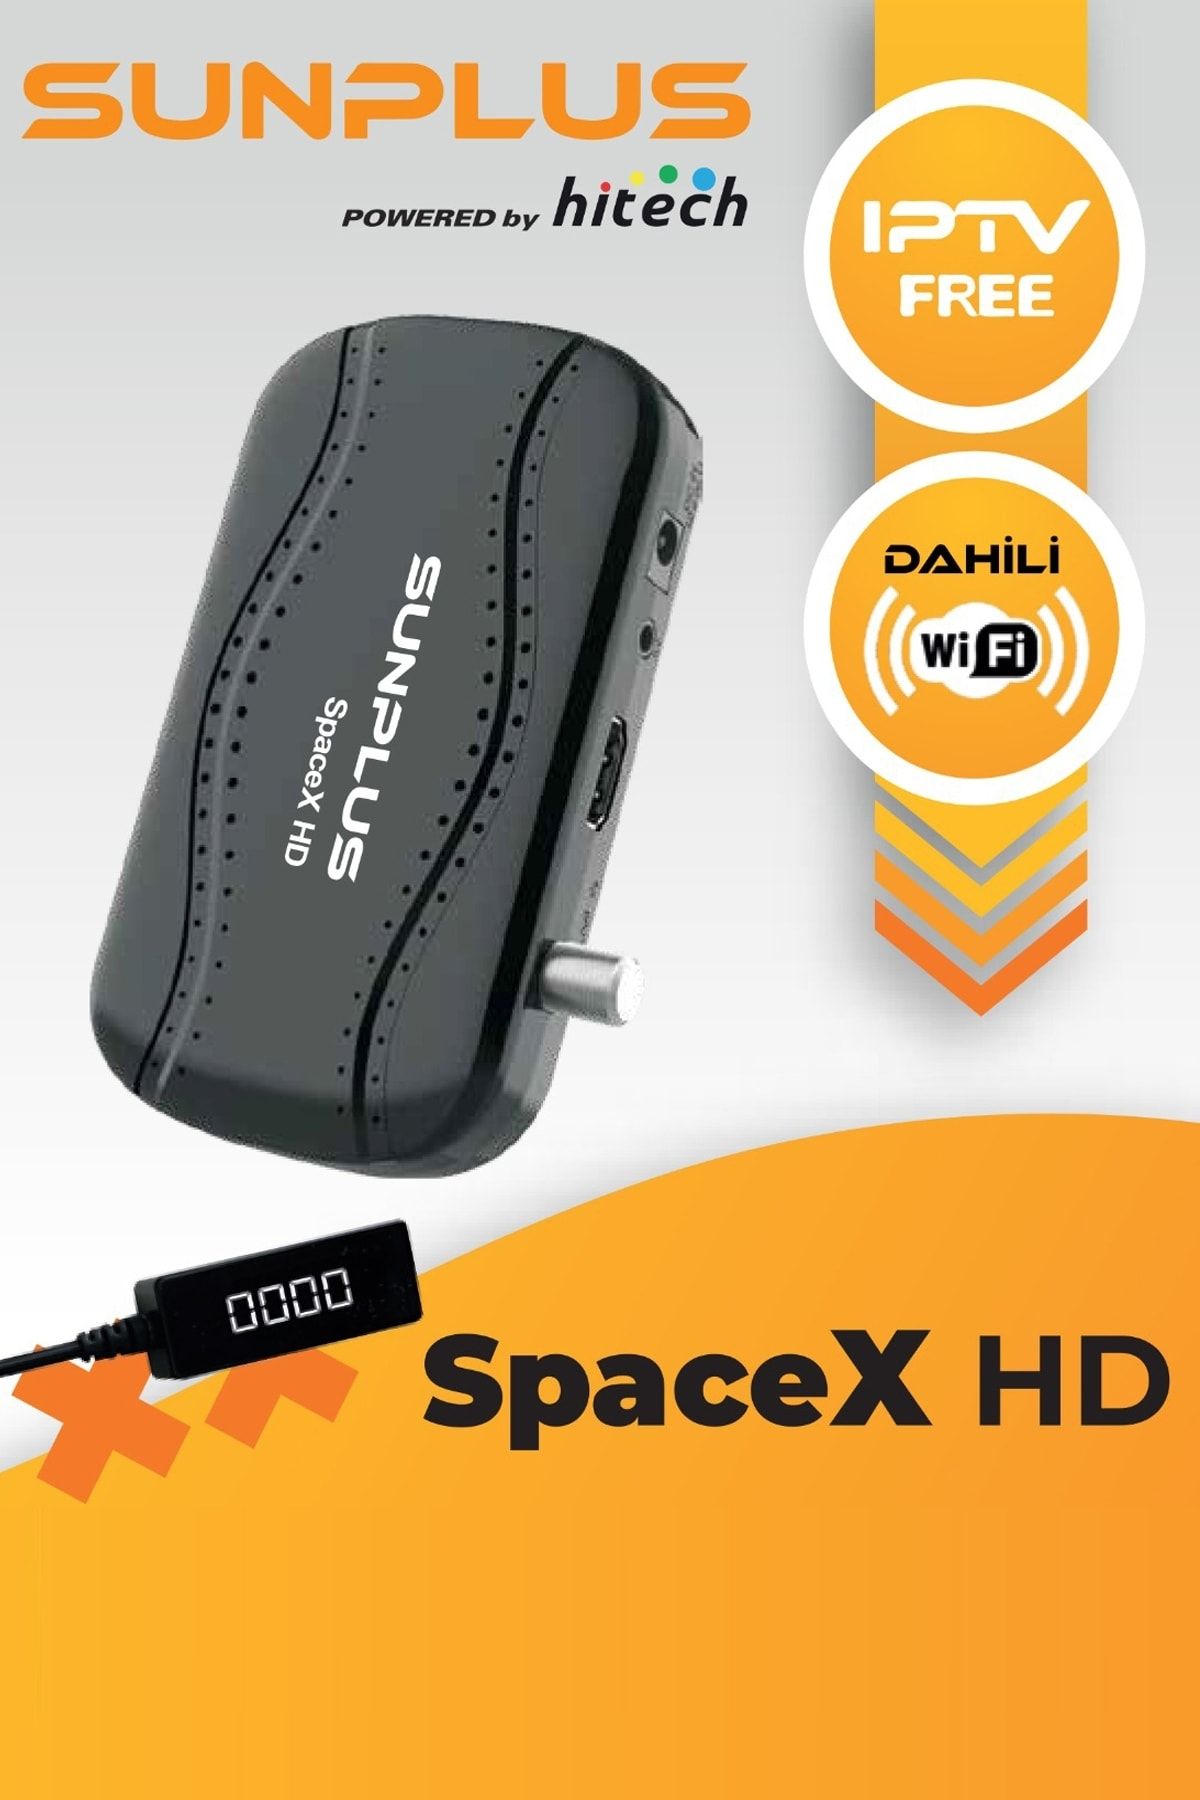 Sunplus Spacex Çanaklı-çanaksız Dahili Wi-fi Full Hd Sinema Paketili Uydu Alıcısı